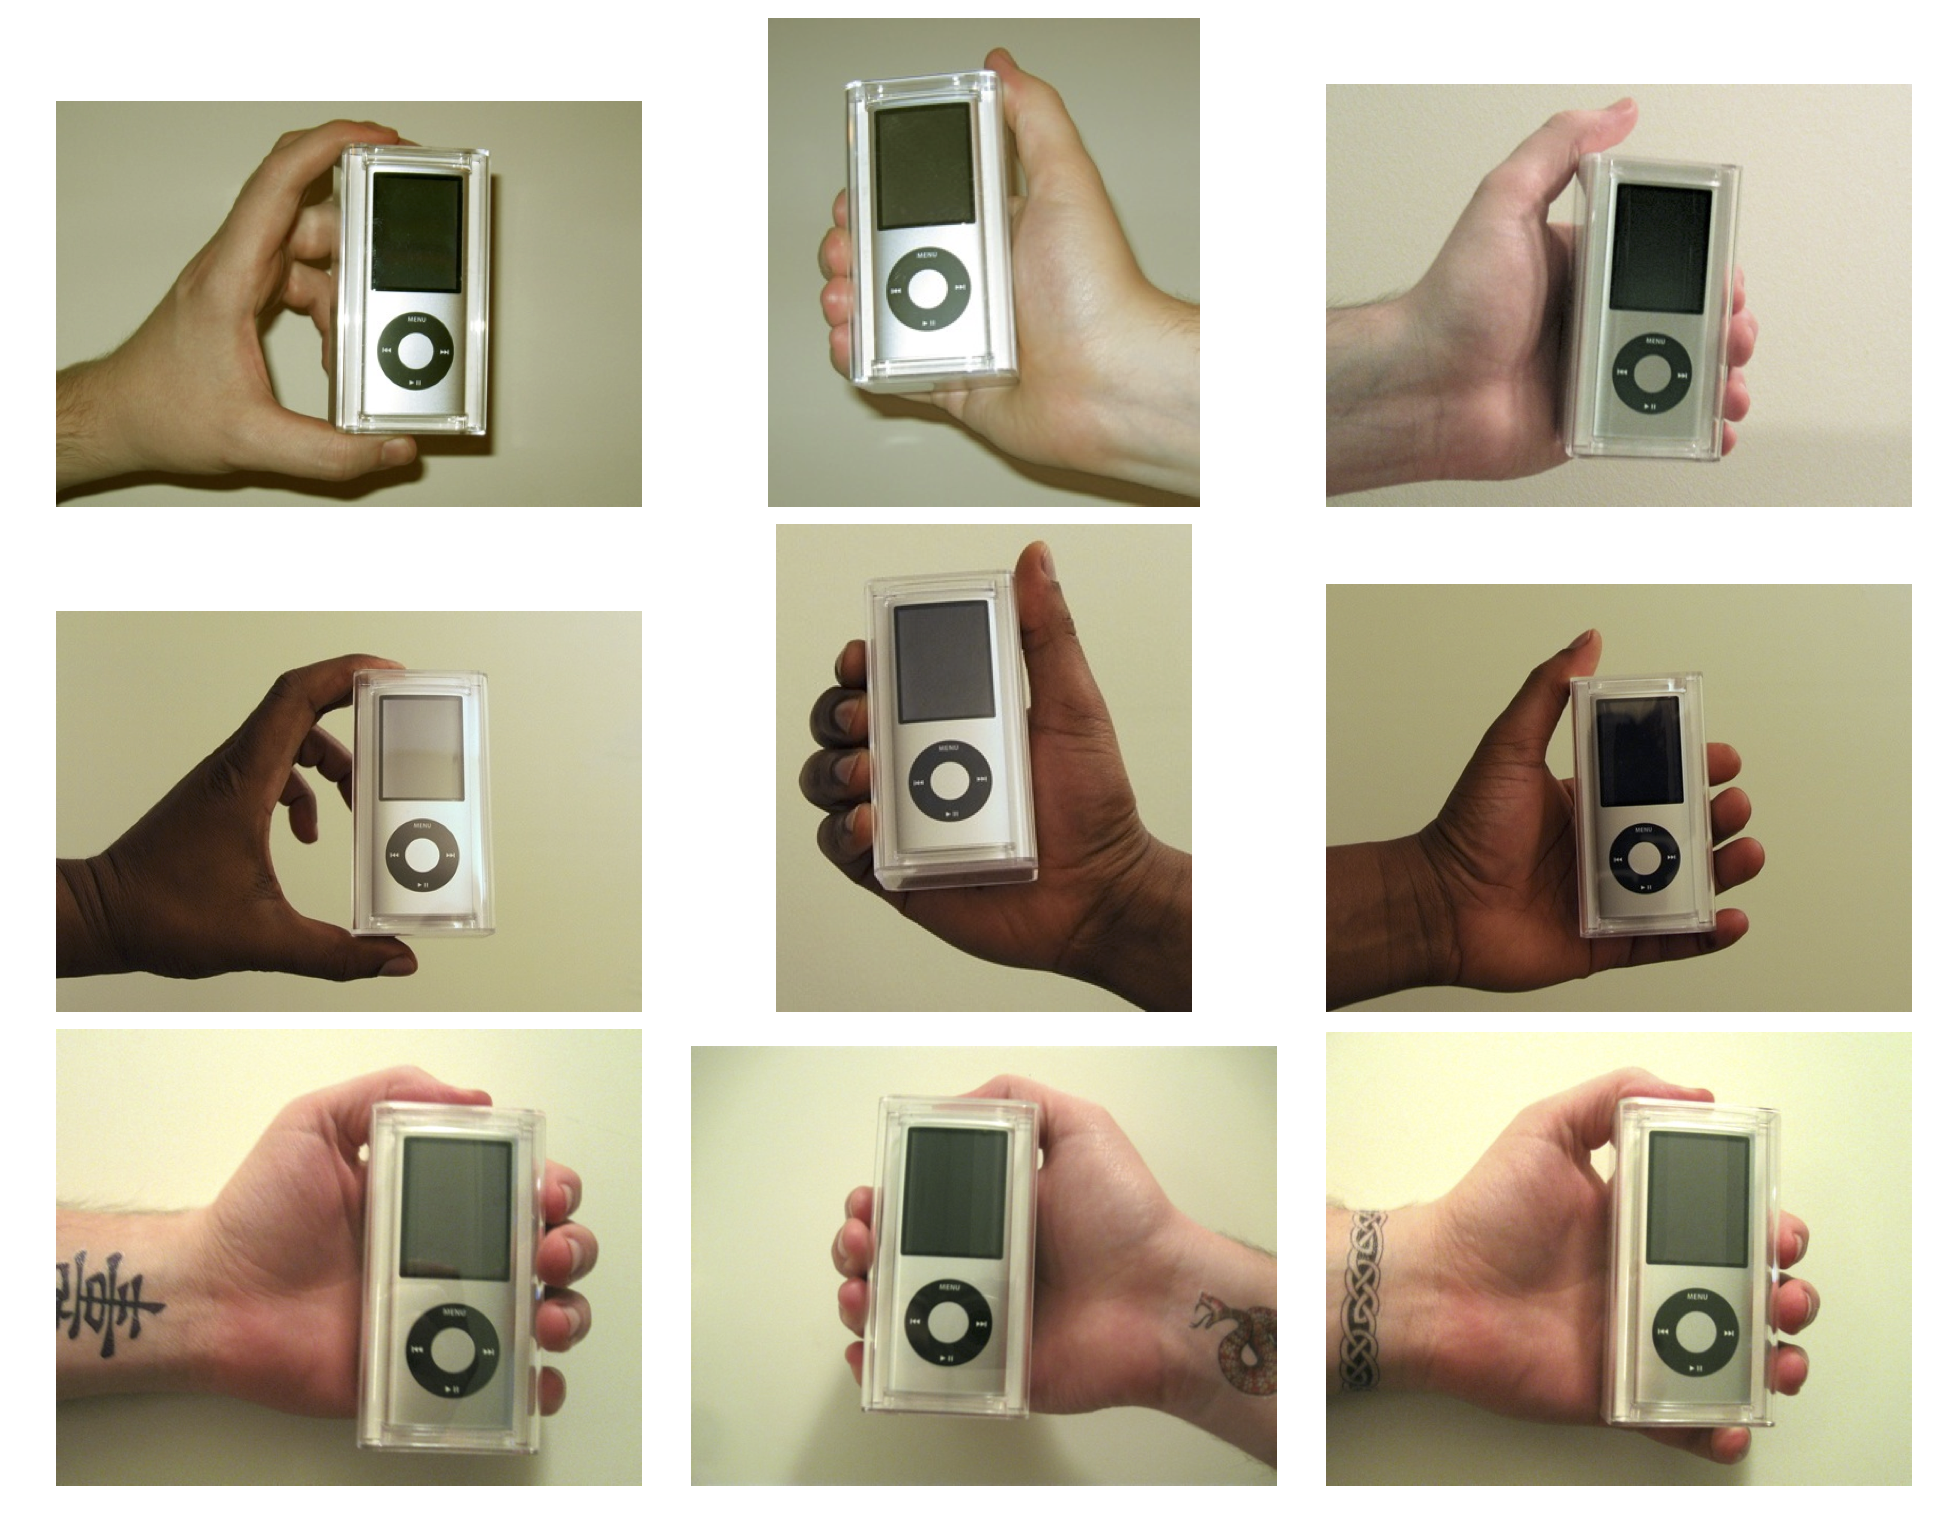 Figura 4.13: Mans utilitzades en l'experiment de Doleac i Stein (2013). Els iPod van ser venuts per venedors amb diferents característiques per mesurar la discriminació en un mercat en línia. Reproduït amb permís de Doleac i Stein (2013), figura 1.